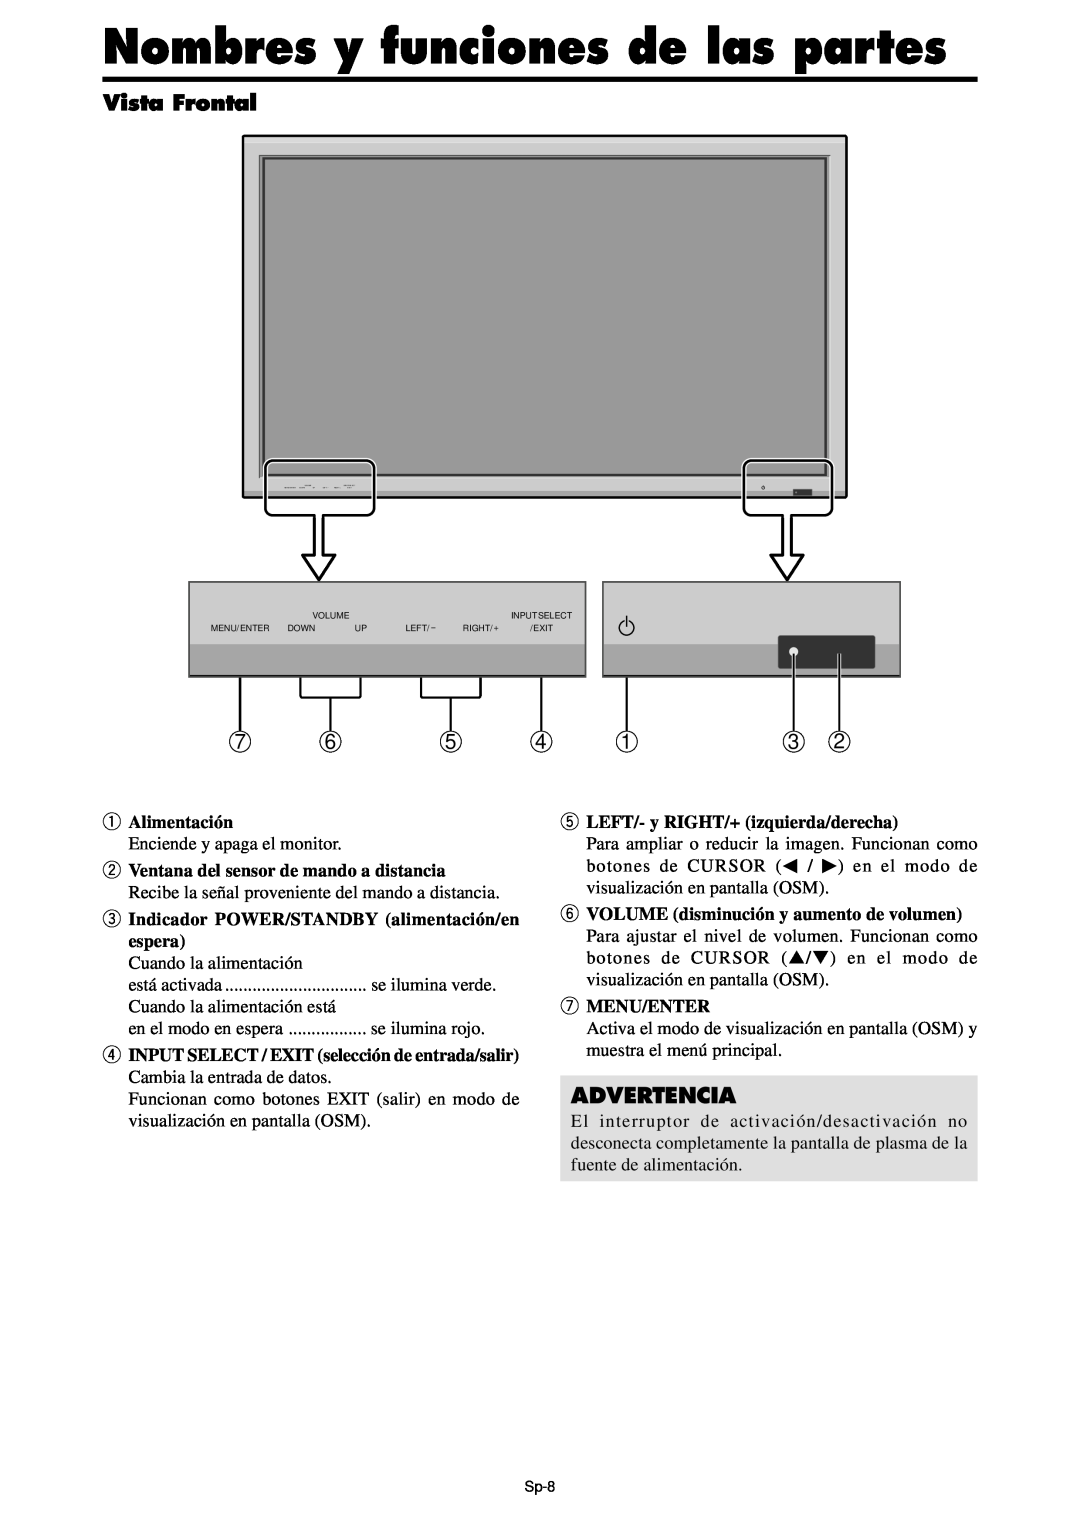 NEC PX-61XM4A, PX-42XM4A manual Nombres y funciones de las partes, Vista Frontal, Advertencia 